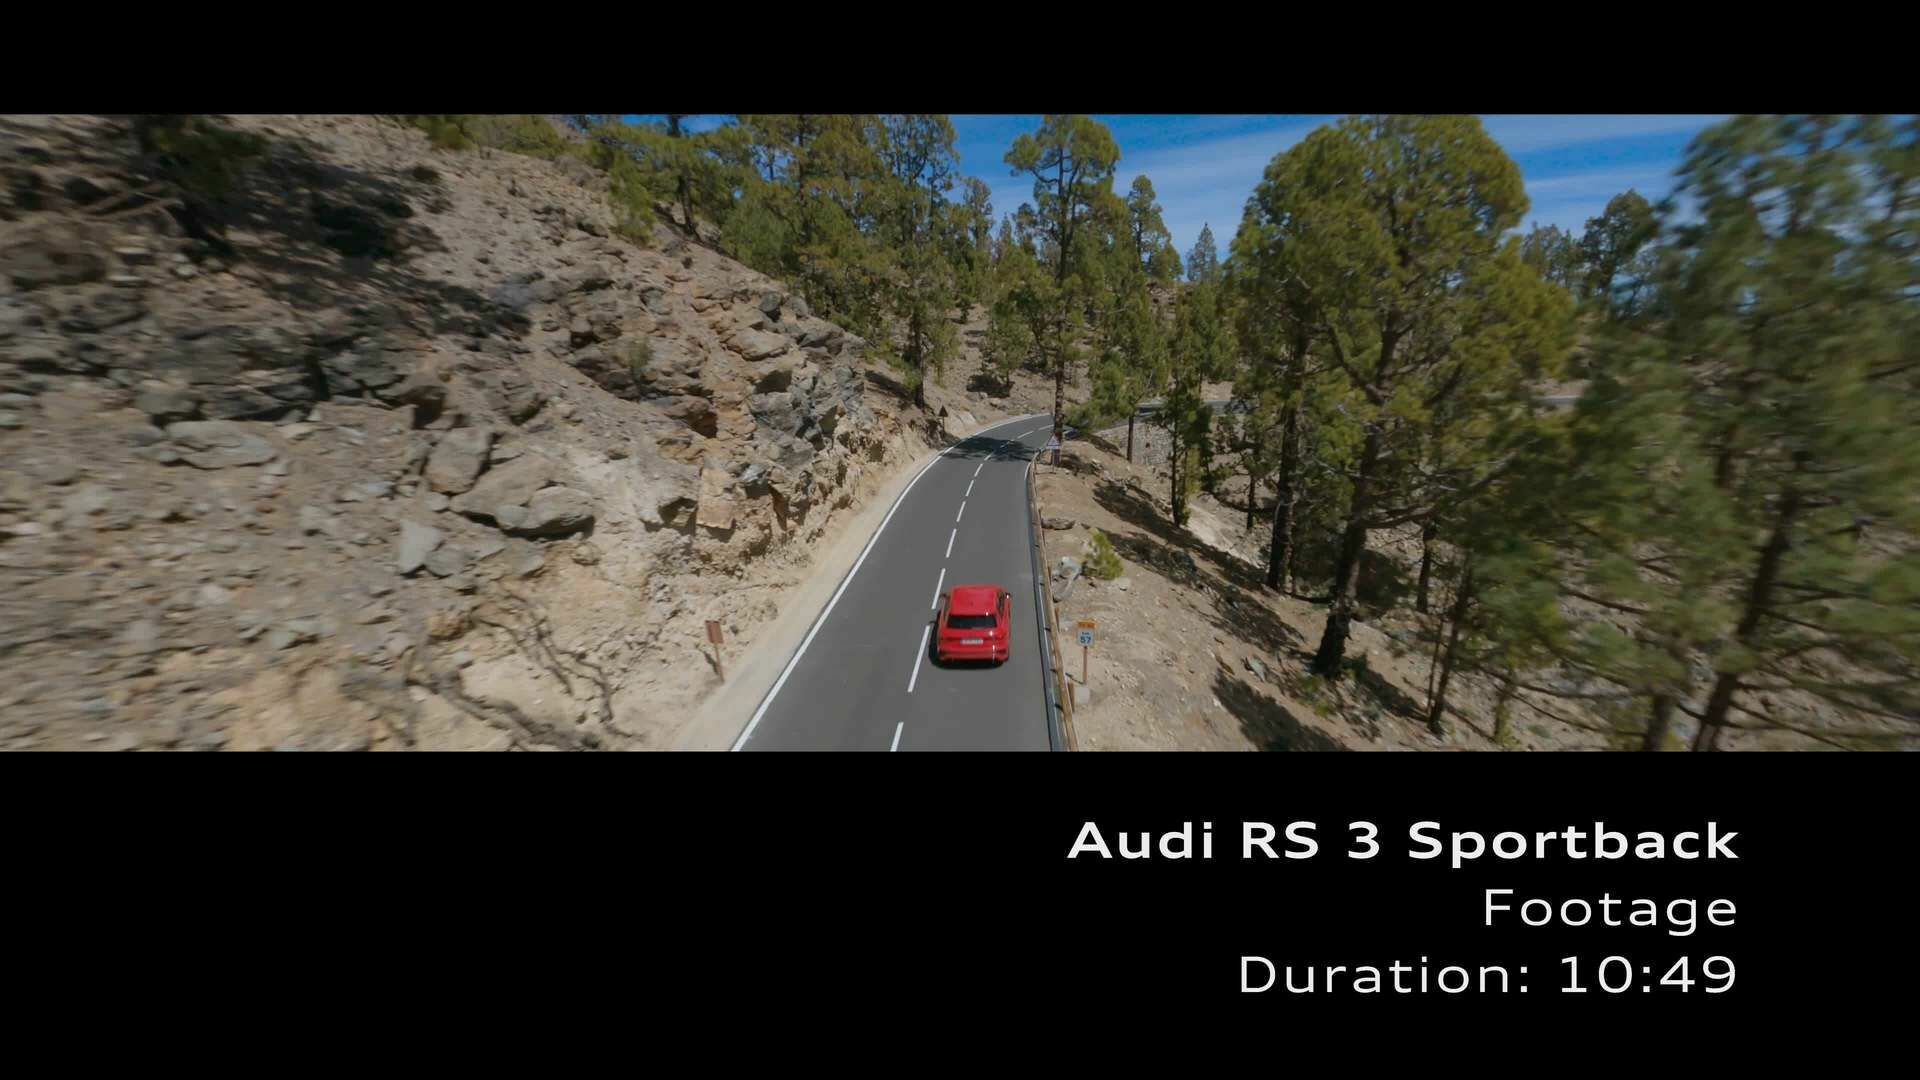 Footage: RS 3 Sportback on Location